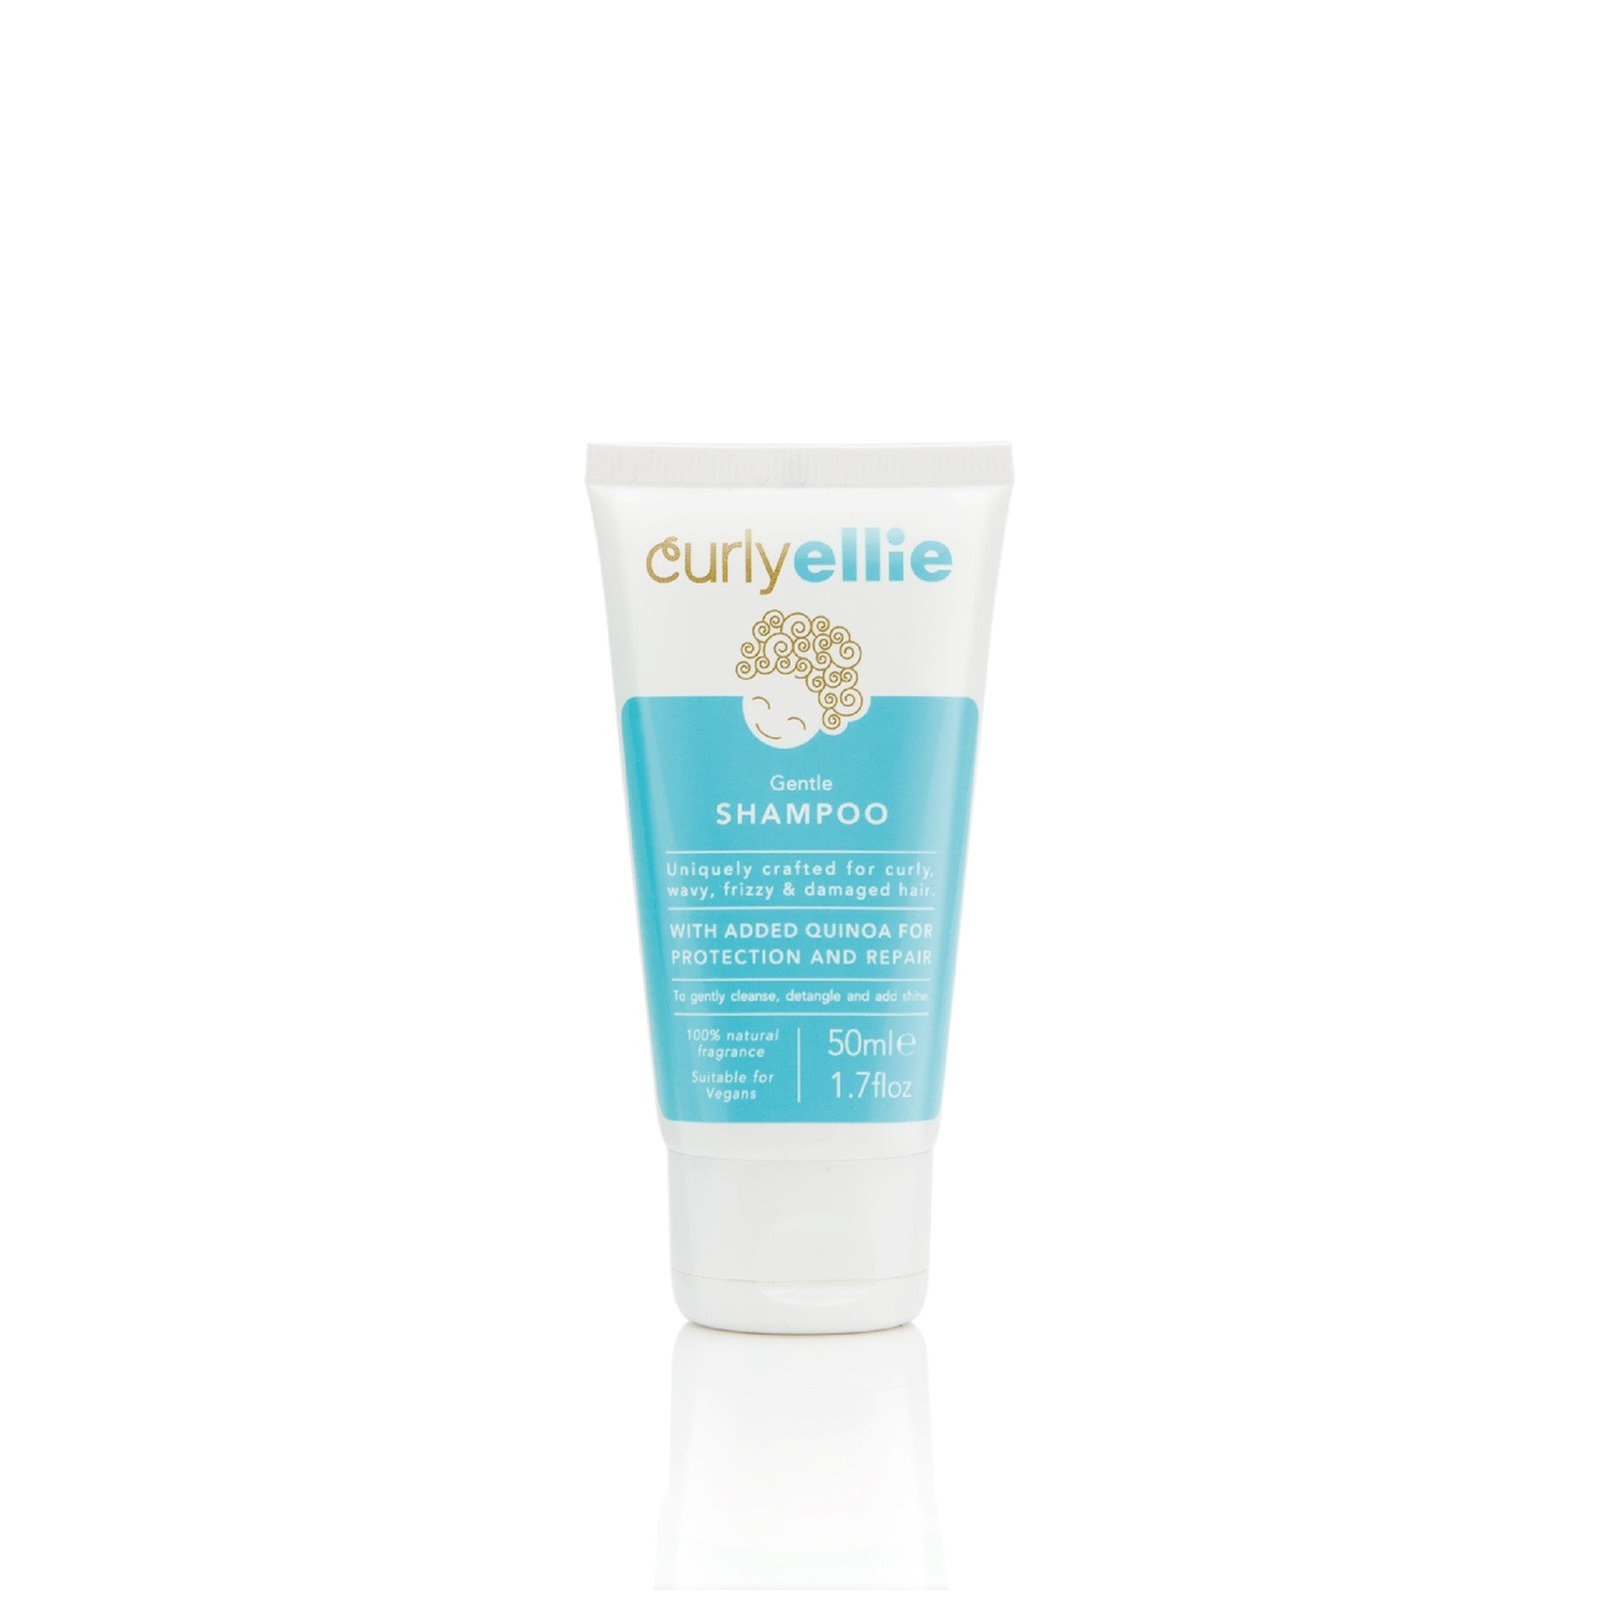 CurlyEllie Gentle Shampoo 50ml (1.7 fl oz)